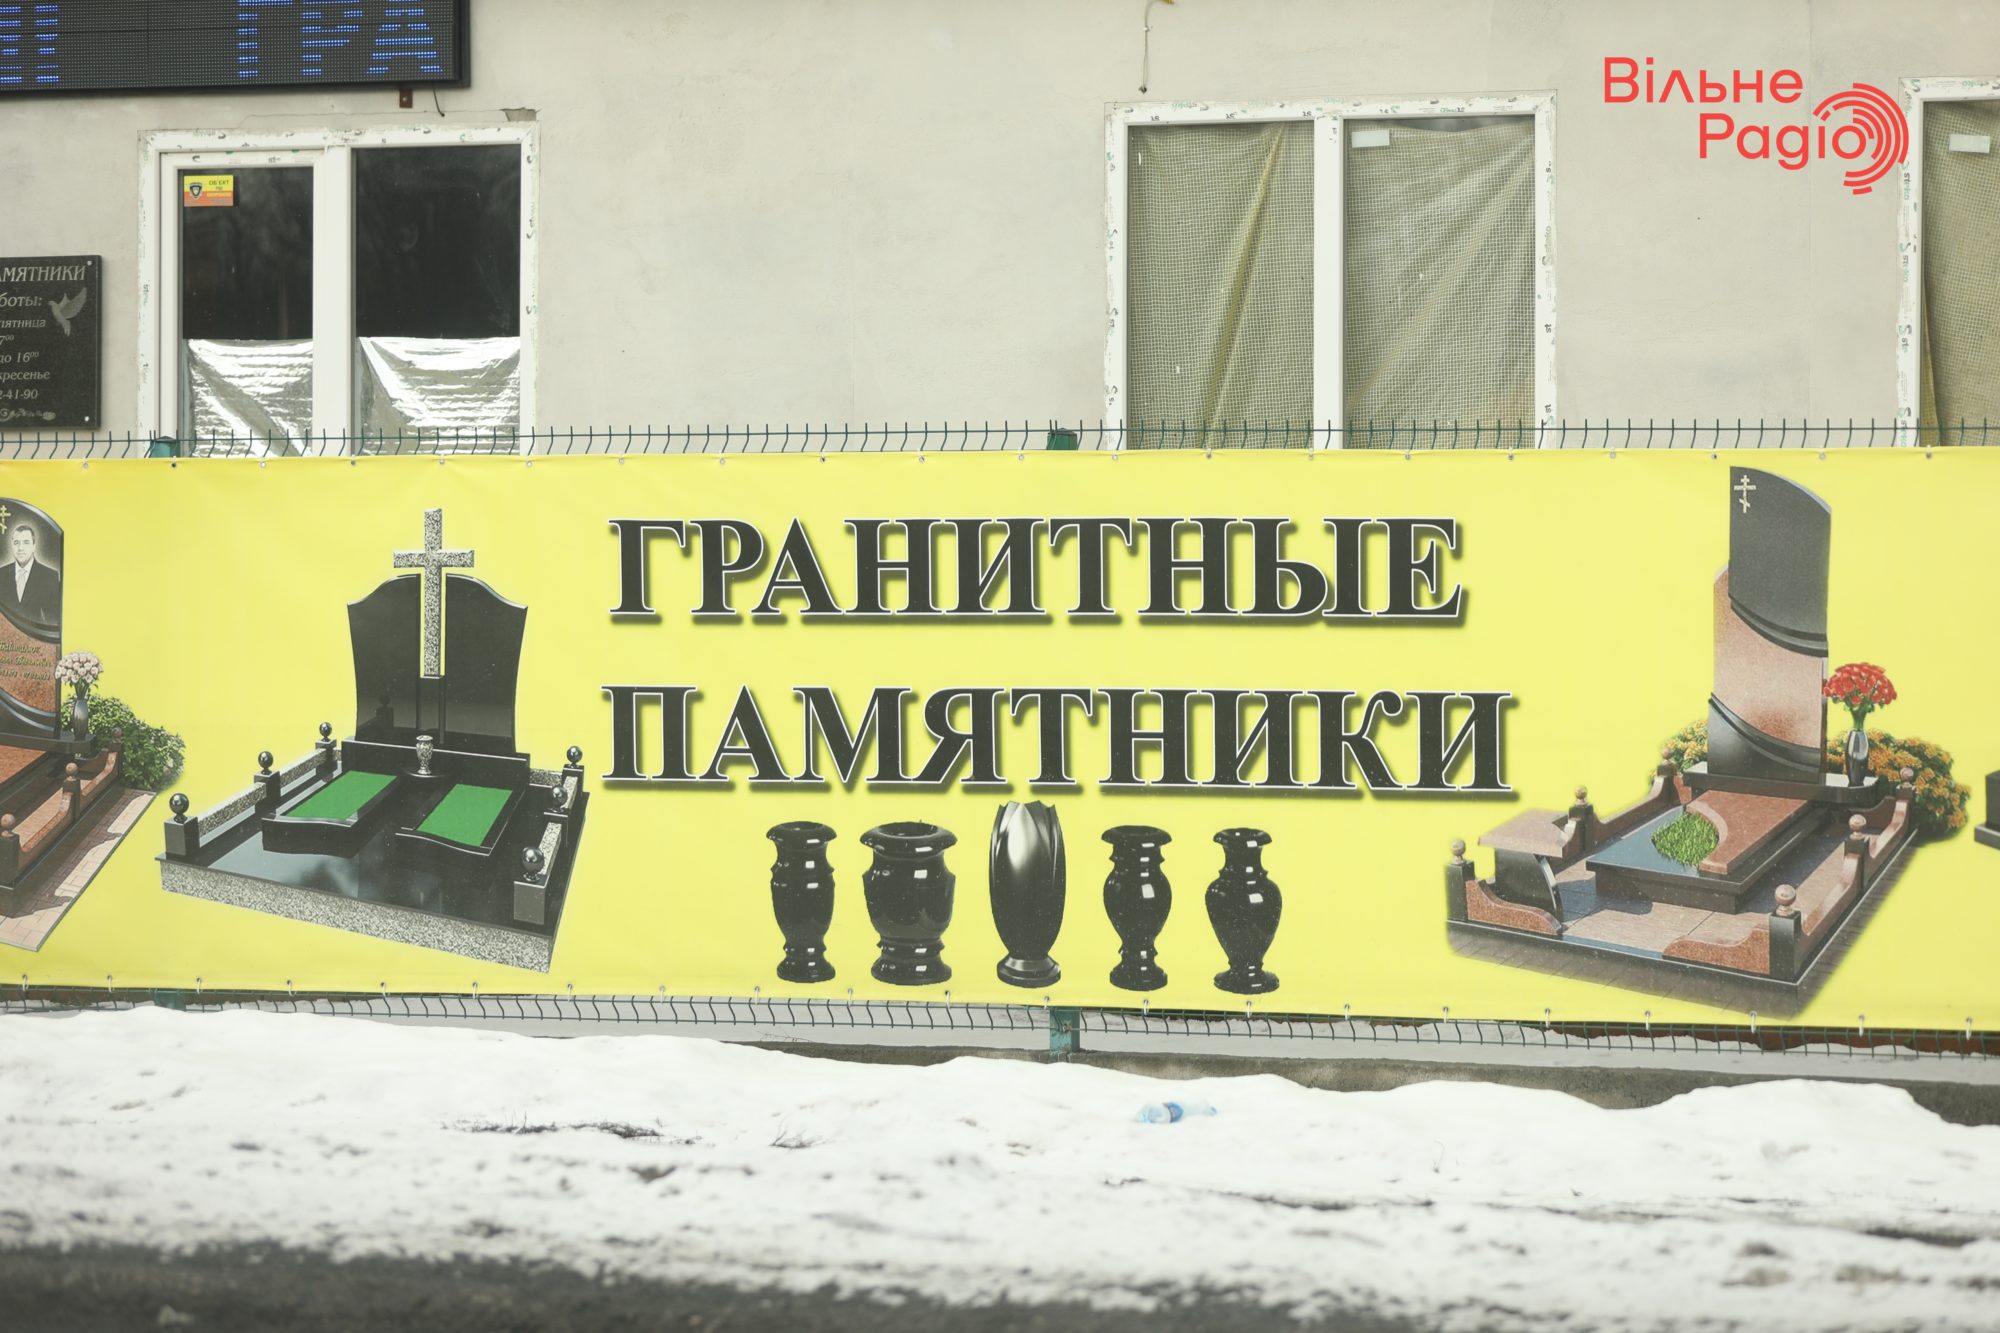 Глав 7 громад Донбасса просят убрать рекламу, которая нарушает “языковой” закон. Какая ситуация в Бахмуте”(ФОТО) 15